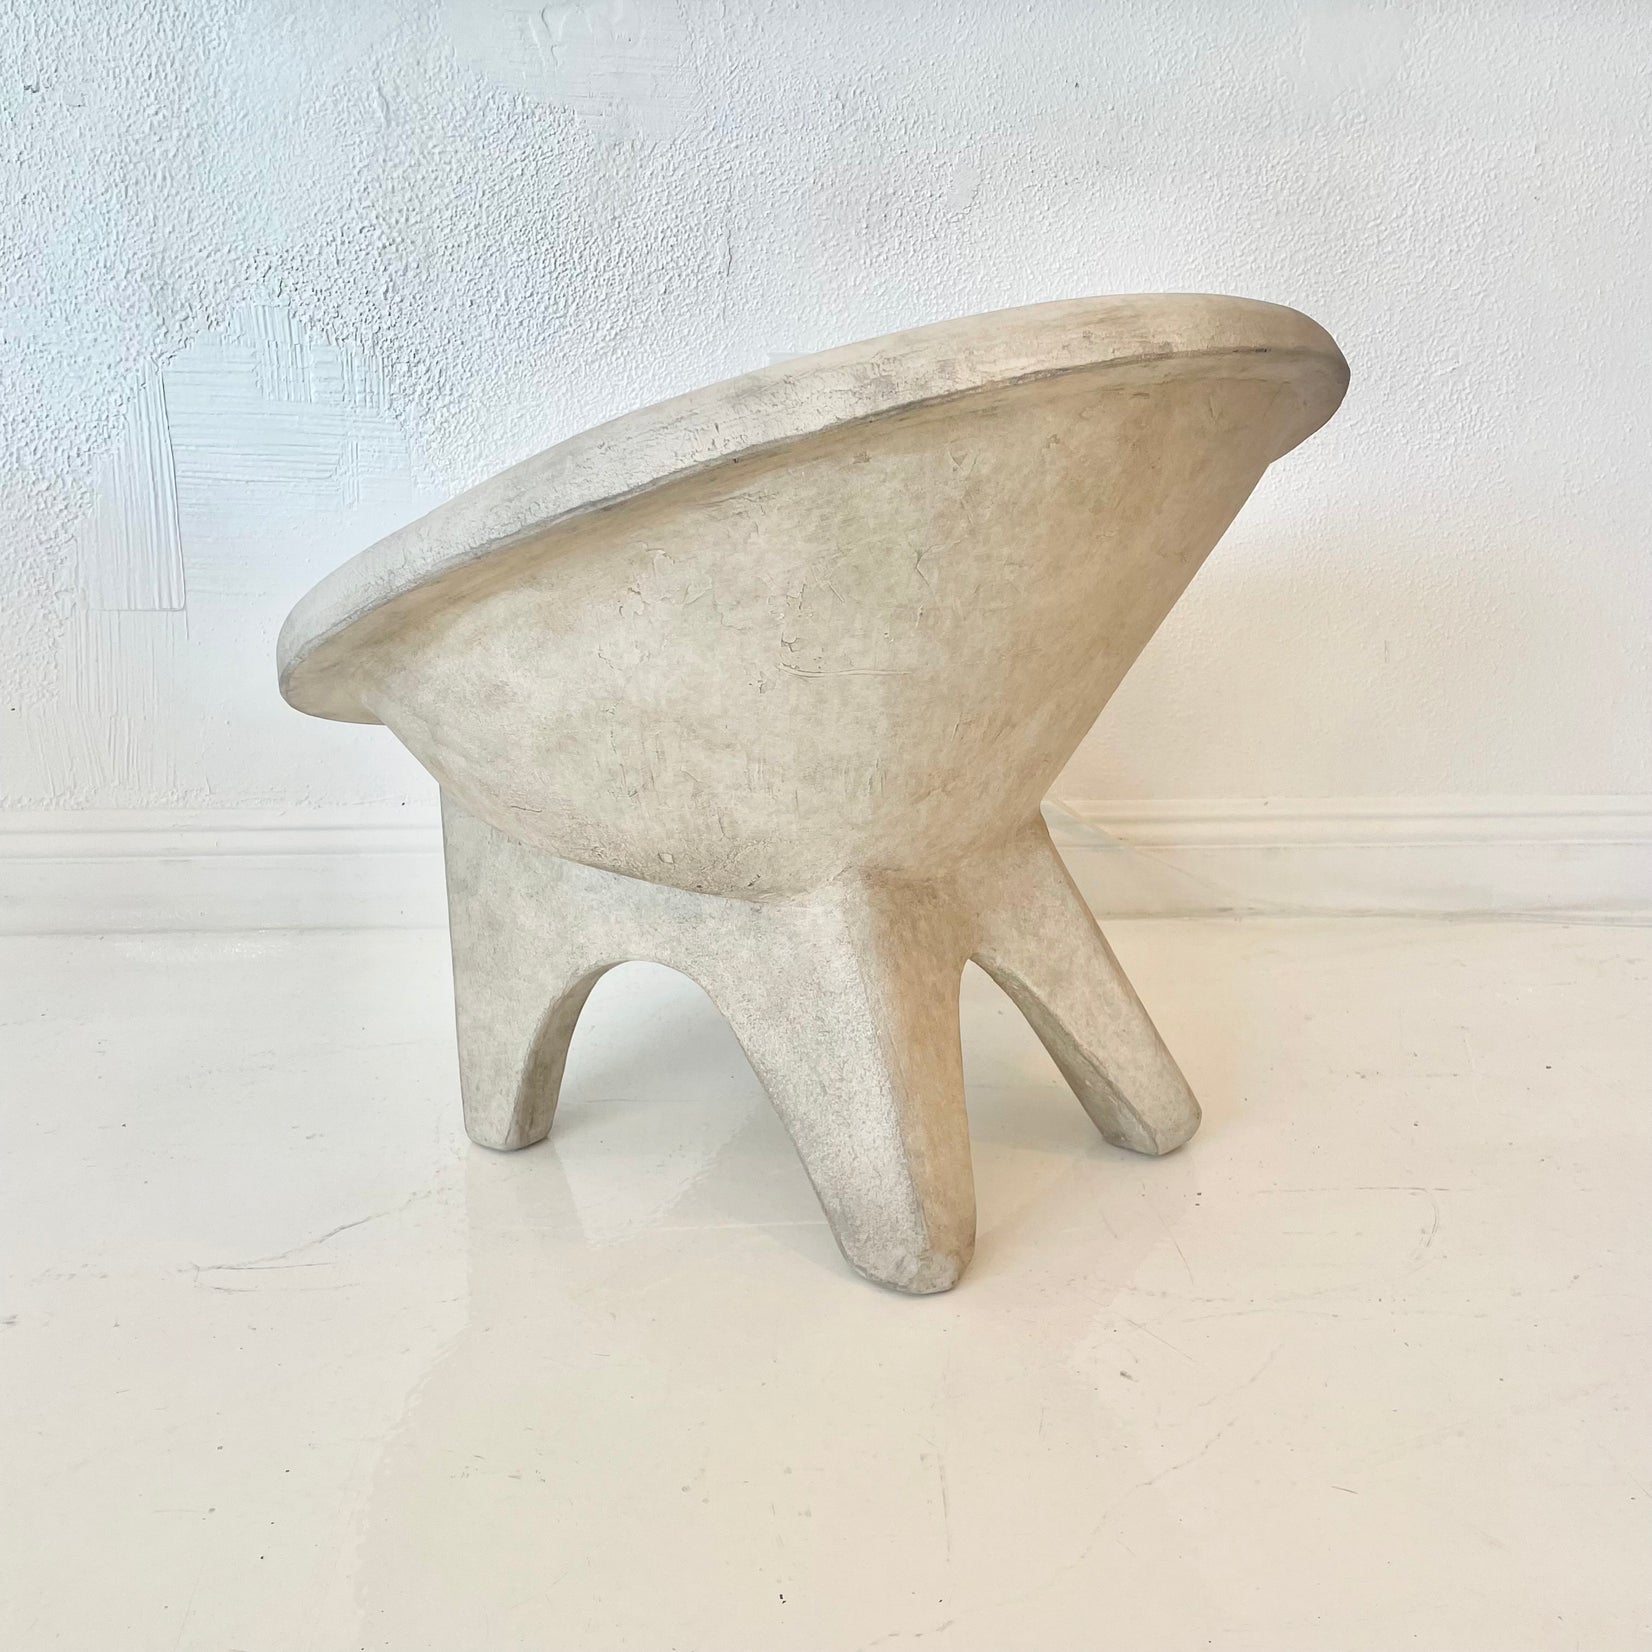 Sculptural Concrete Chair by Merit, Los Angeles